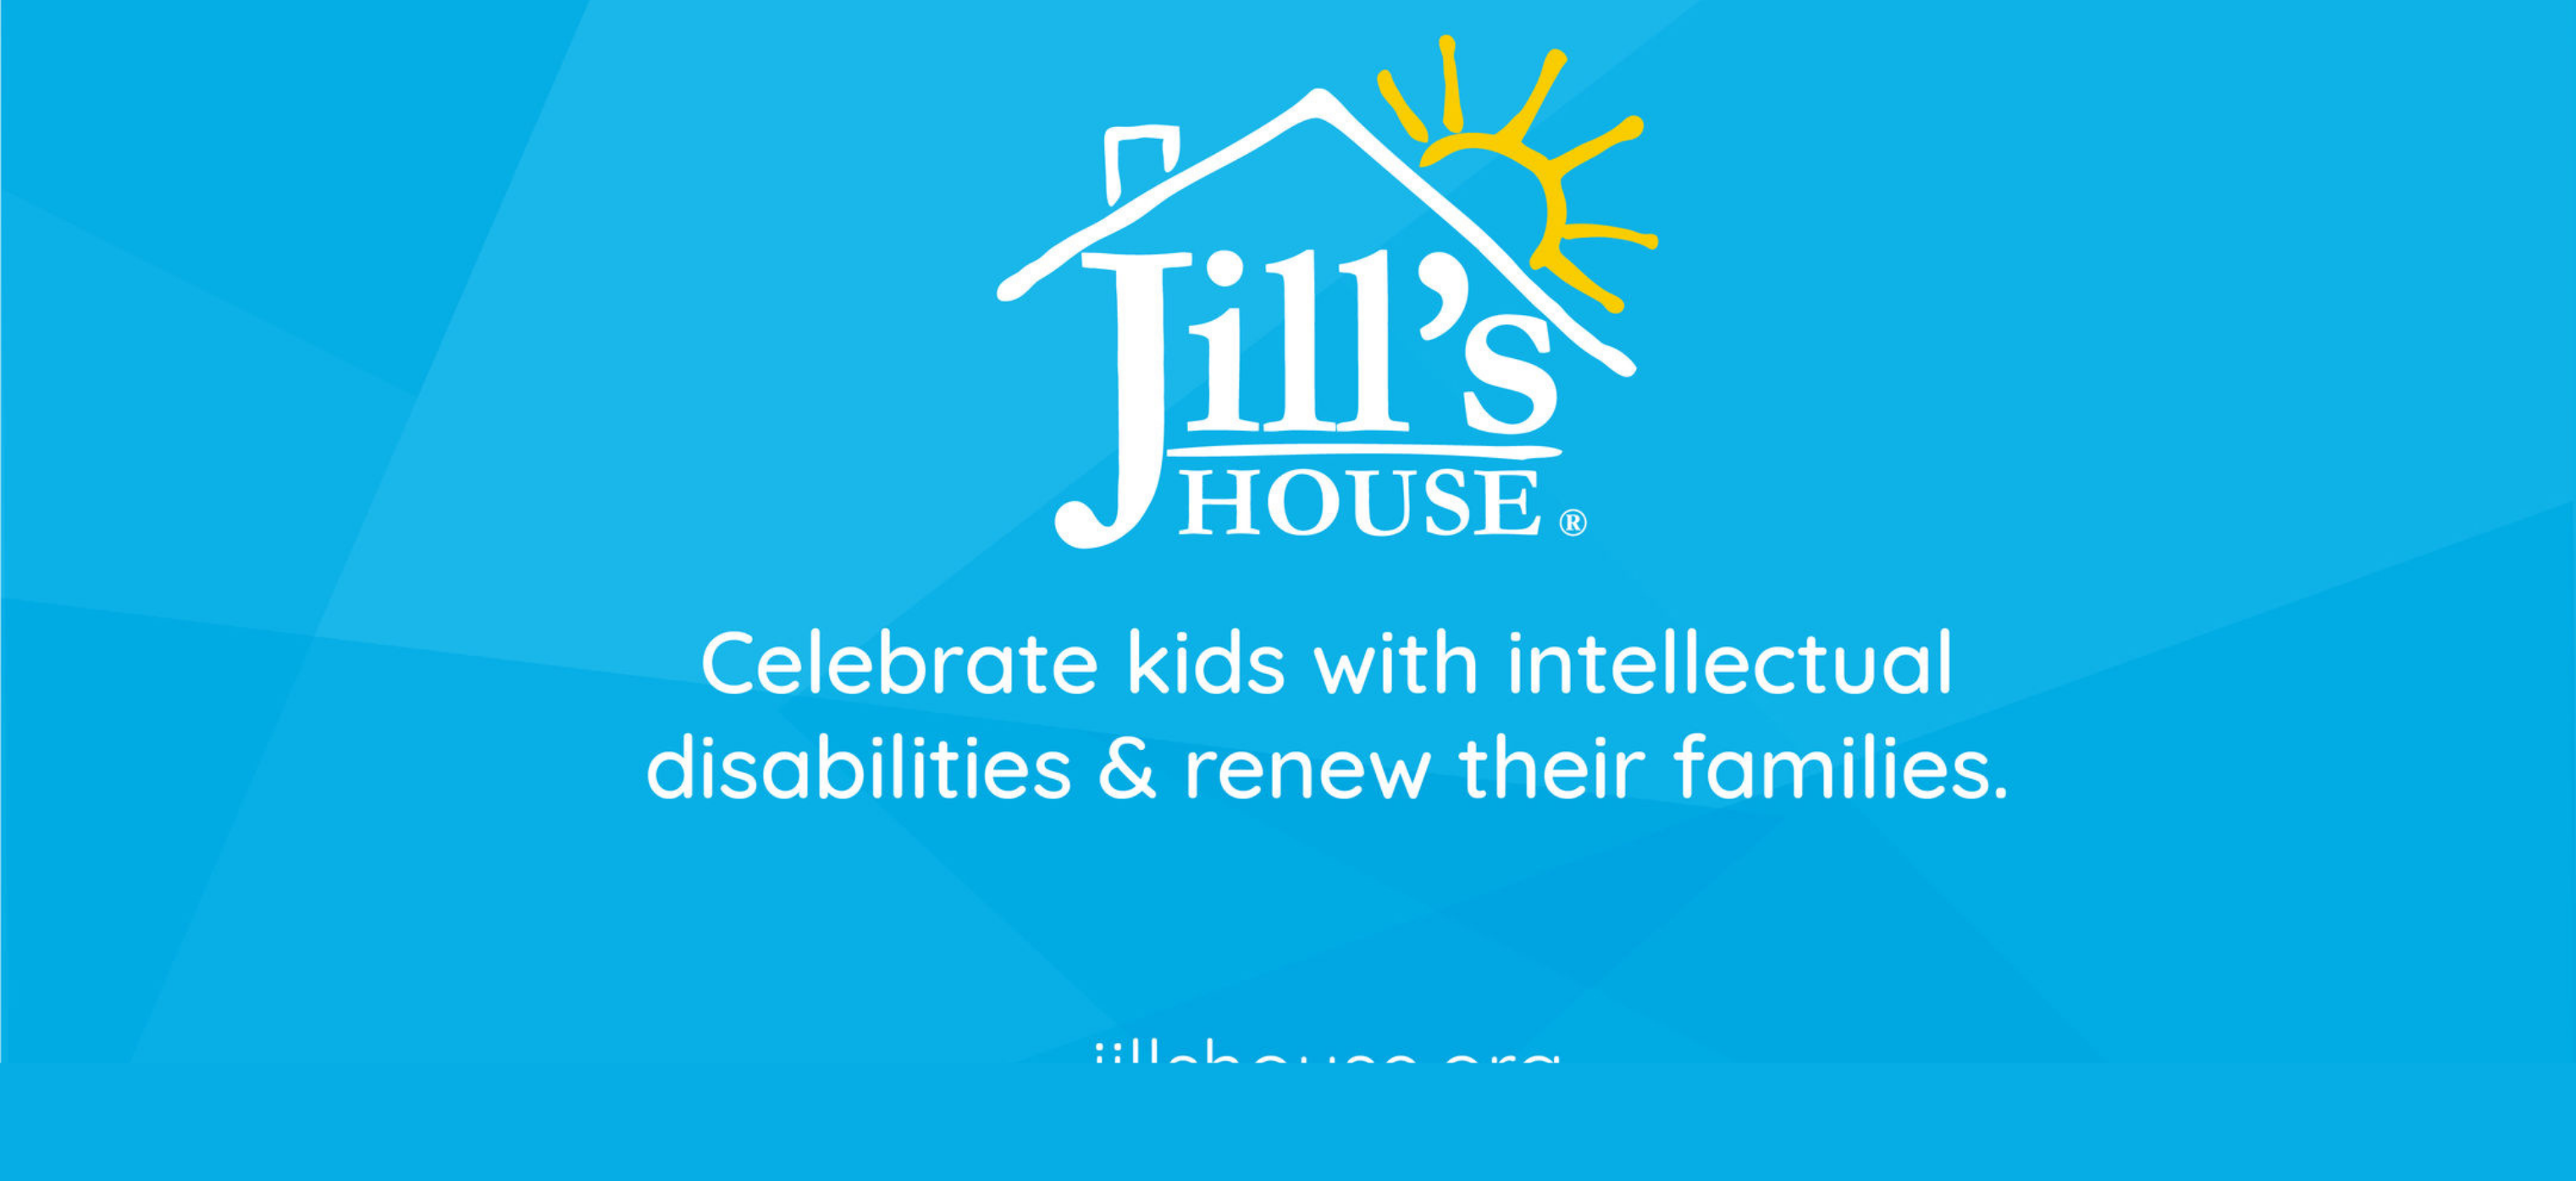 Bài thuyết trình của Jill's House - Ngày 8 tháng XNUMX!